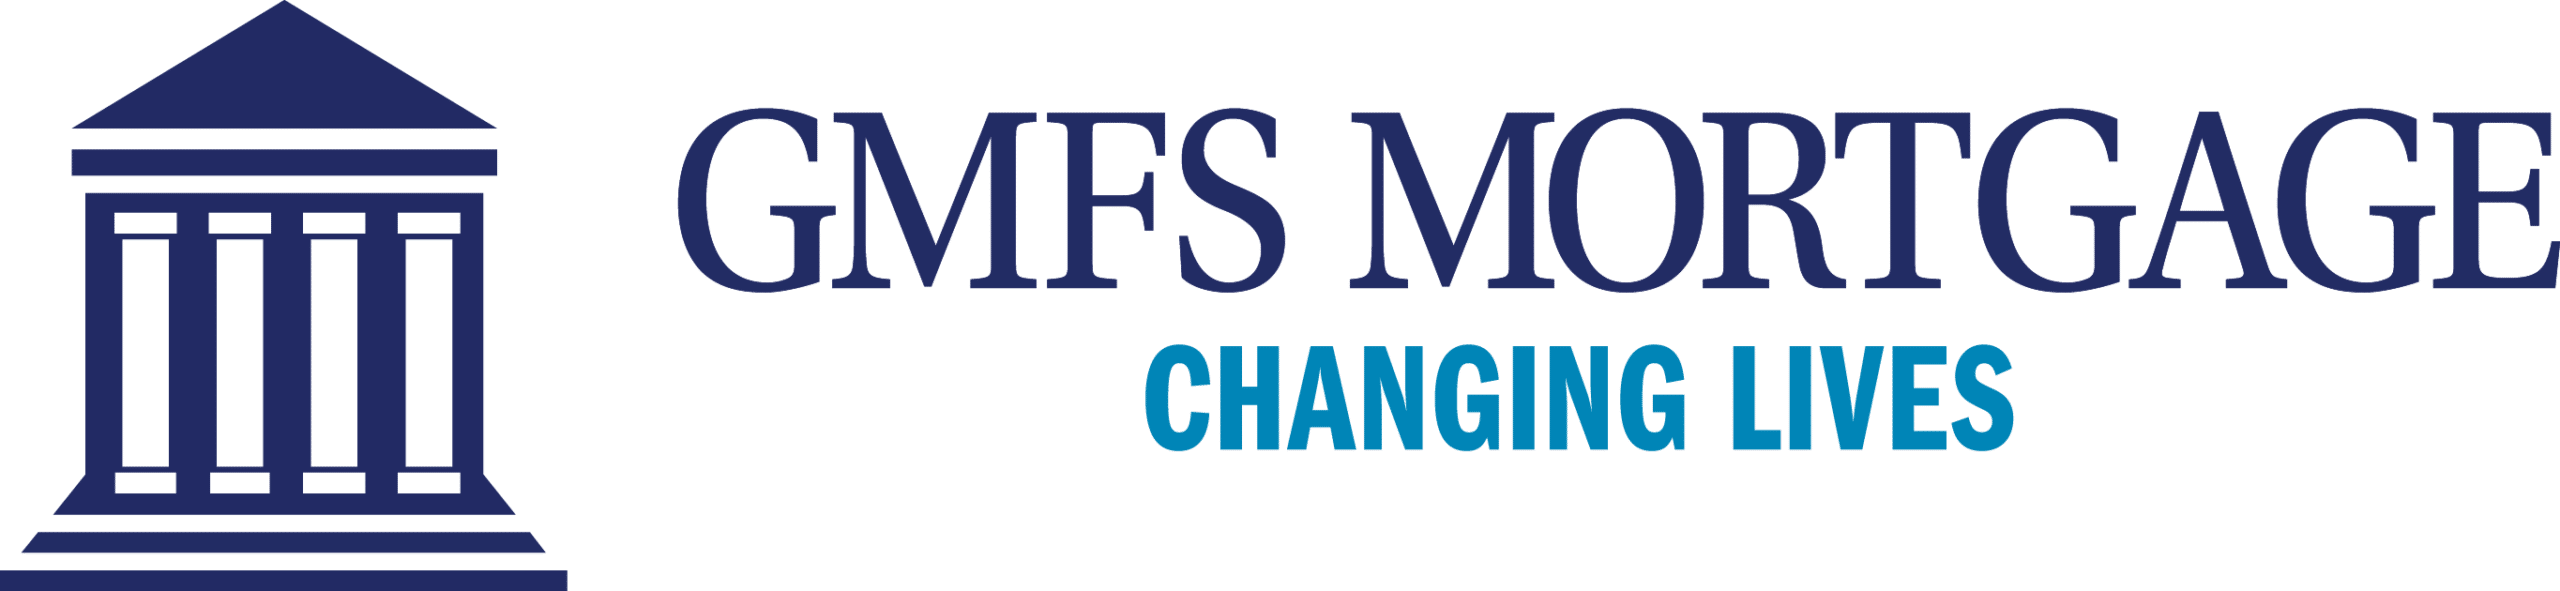  GMFS Mortgage Parade of Homes sponsor logo